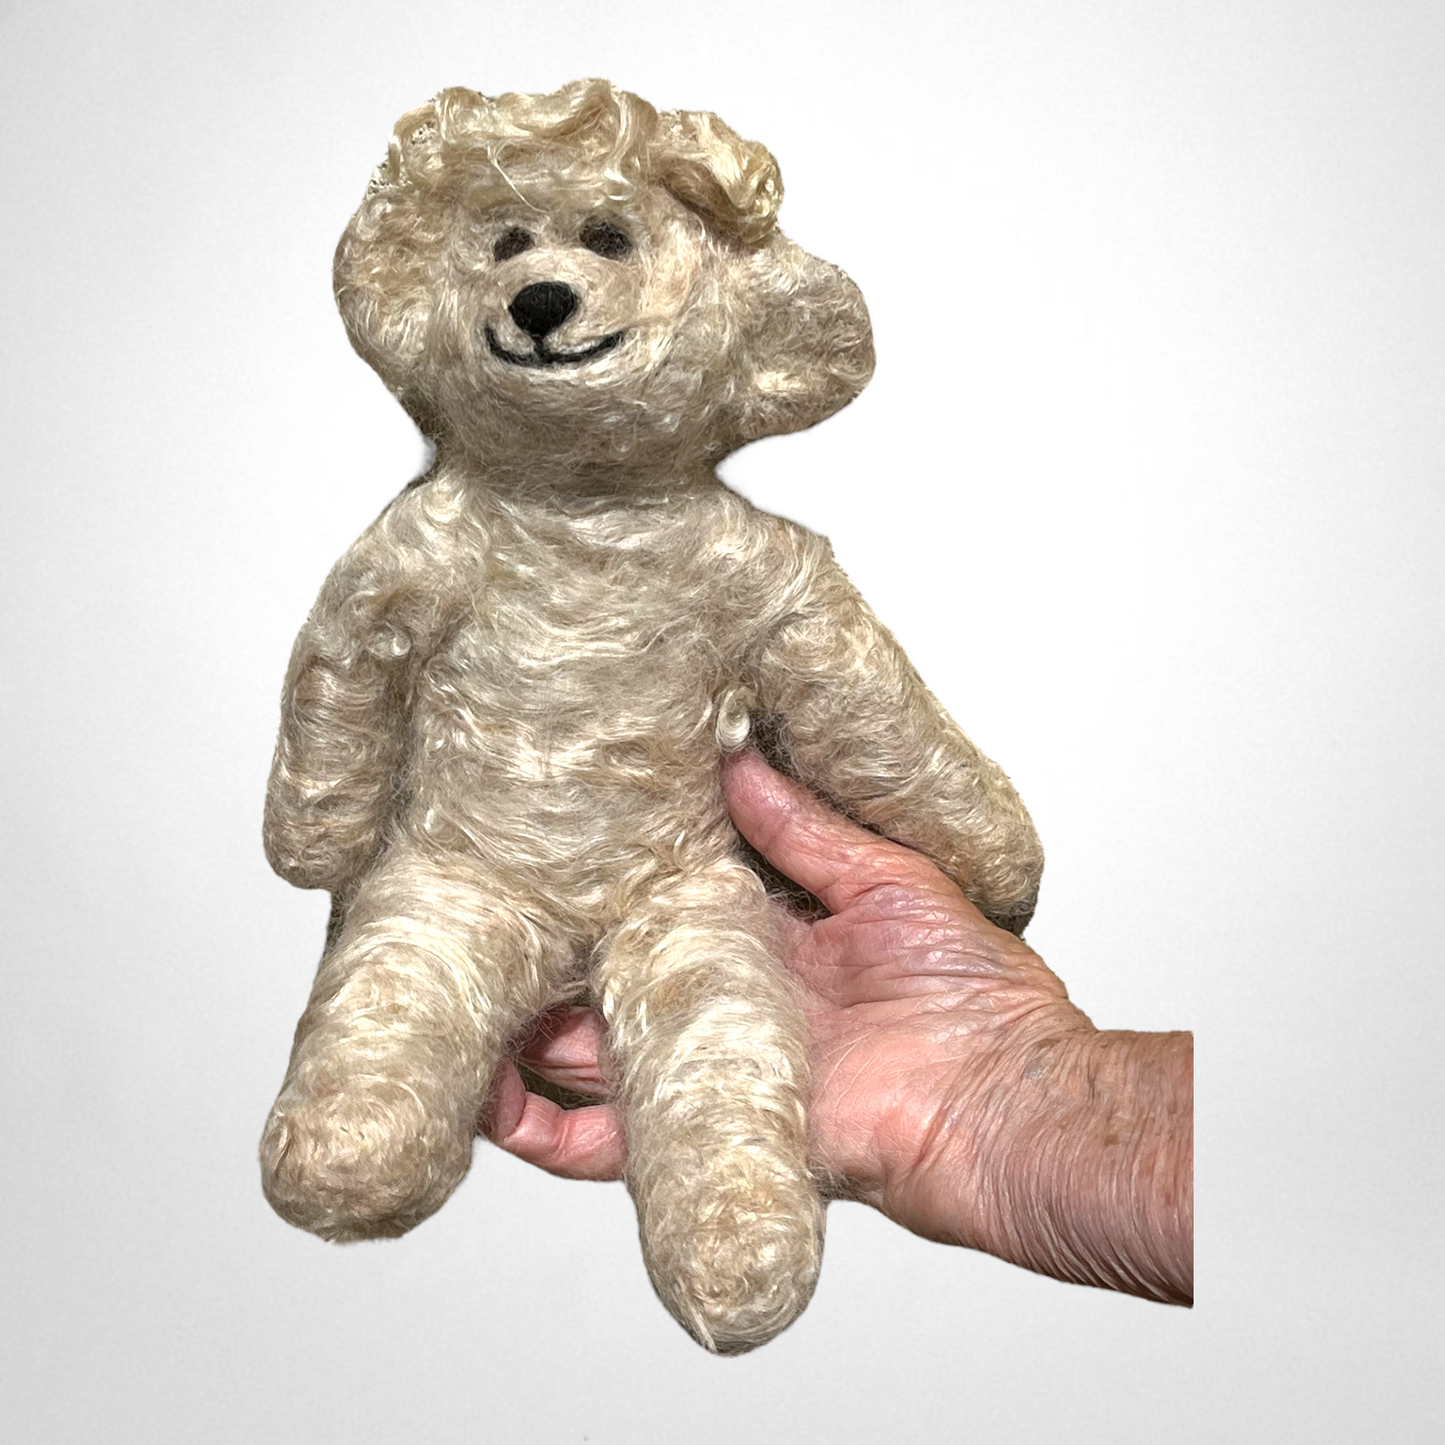 Needle Felted Teddy Bear 12" | Suri Alpaca Fiber Keepsake